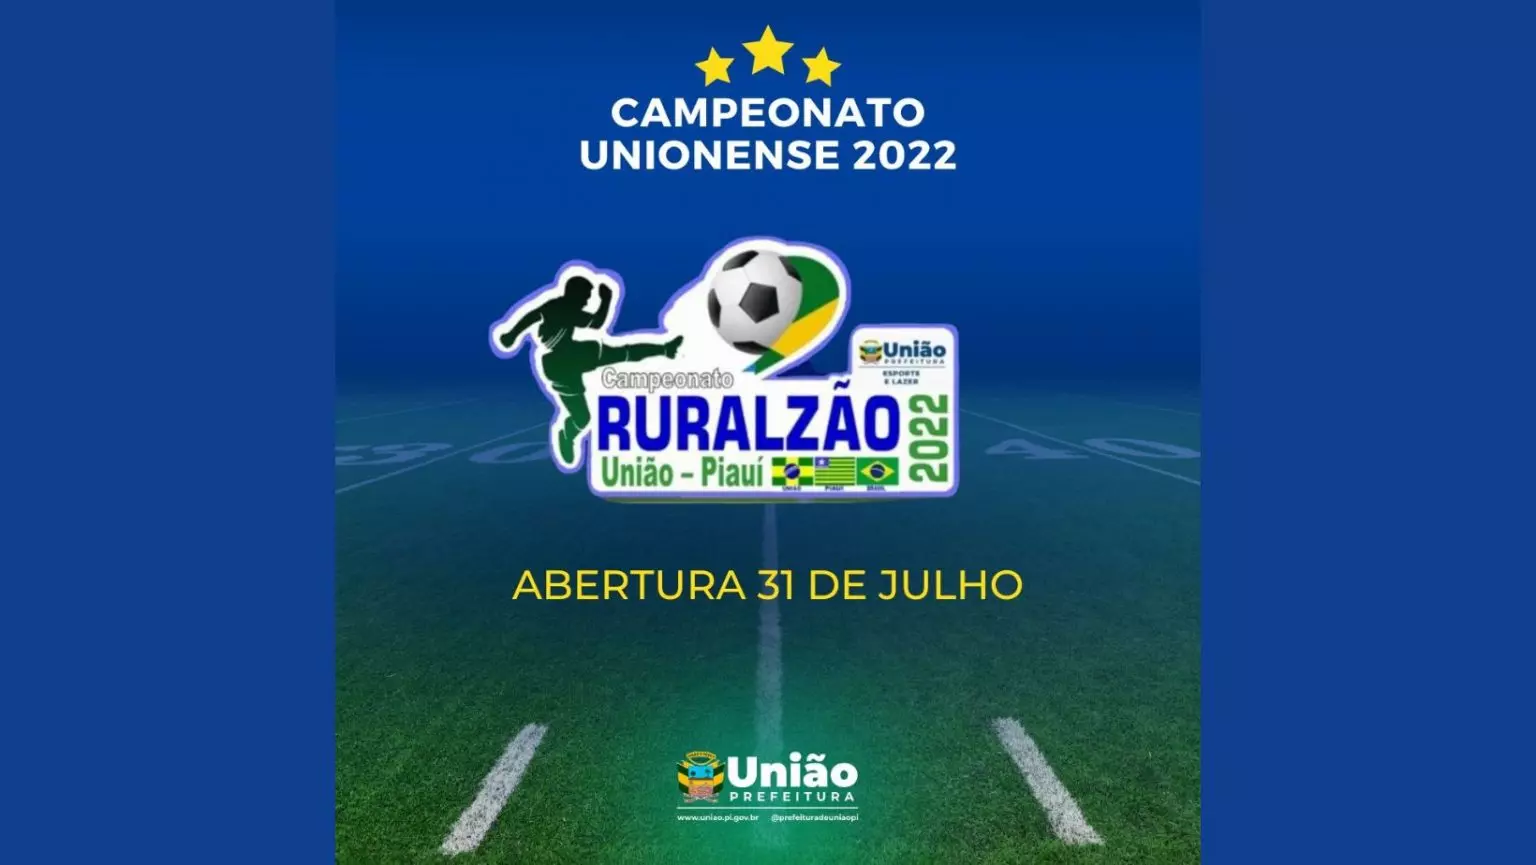 Campeonato Rural inicia em 31 de julho e premiará campeão com R$ 11.000,00